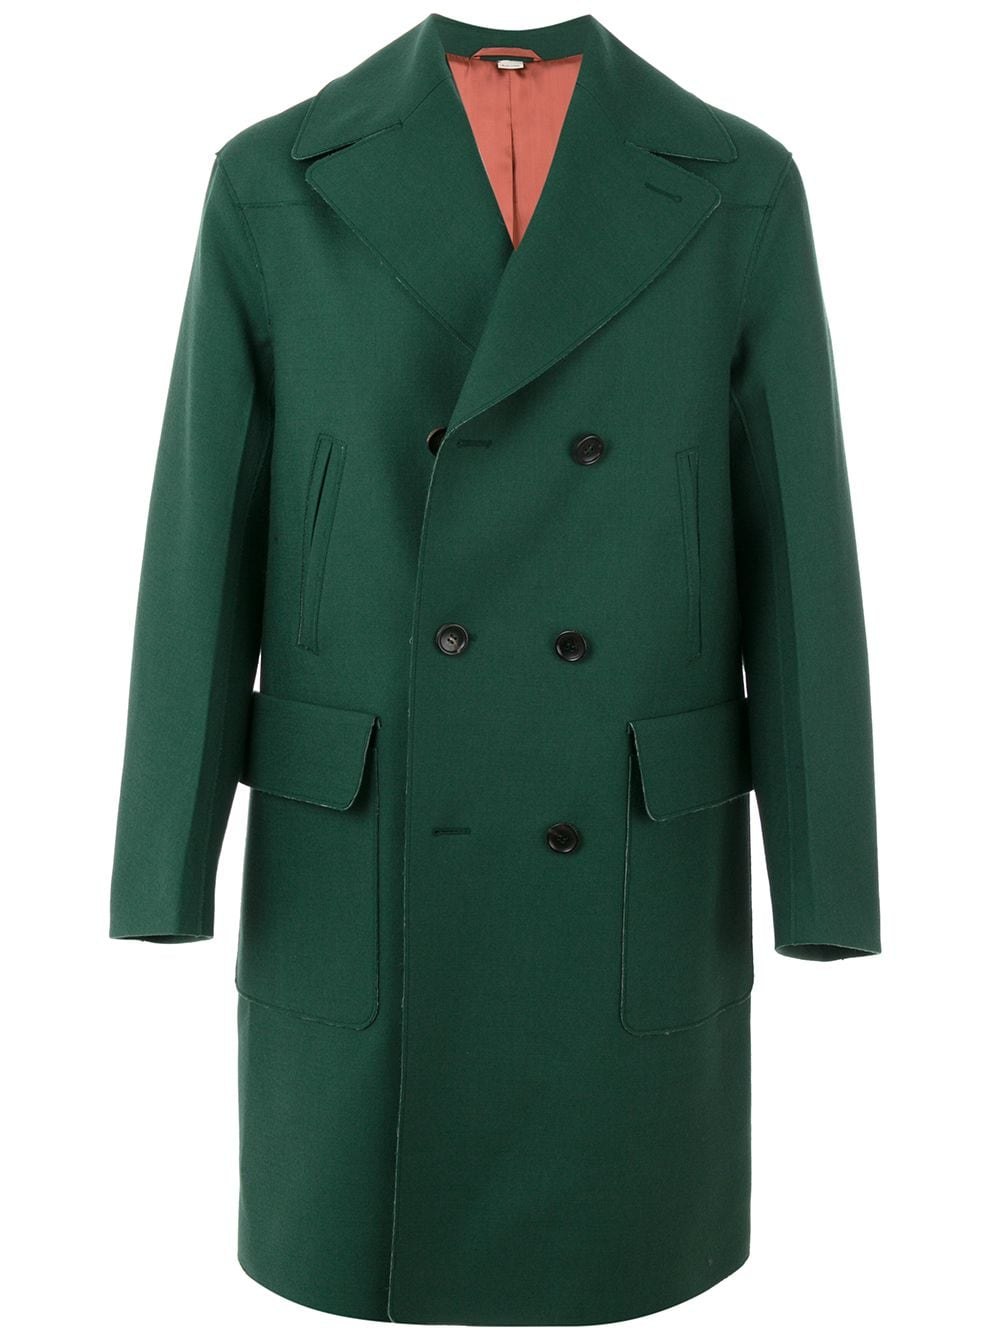 Зеленое мужское пальто. Maag пальто мужское зеленое. J.Limberg пальто мужское зелёное. Темнрзеленое пальто мужское. Зеленое пальто мужское длинное.